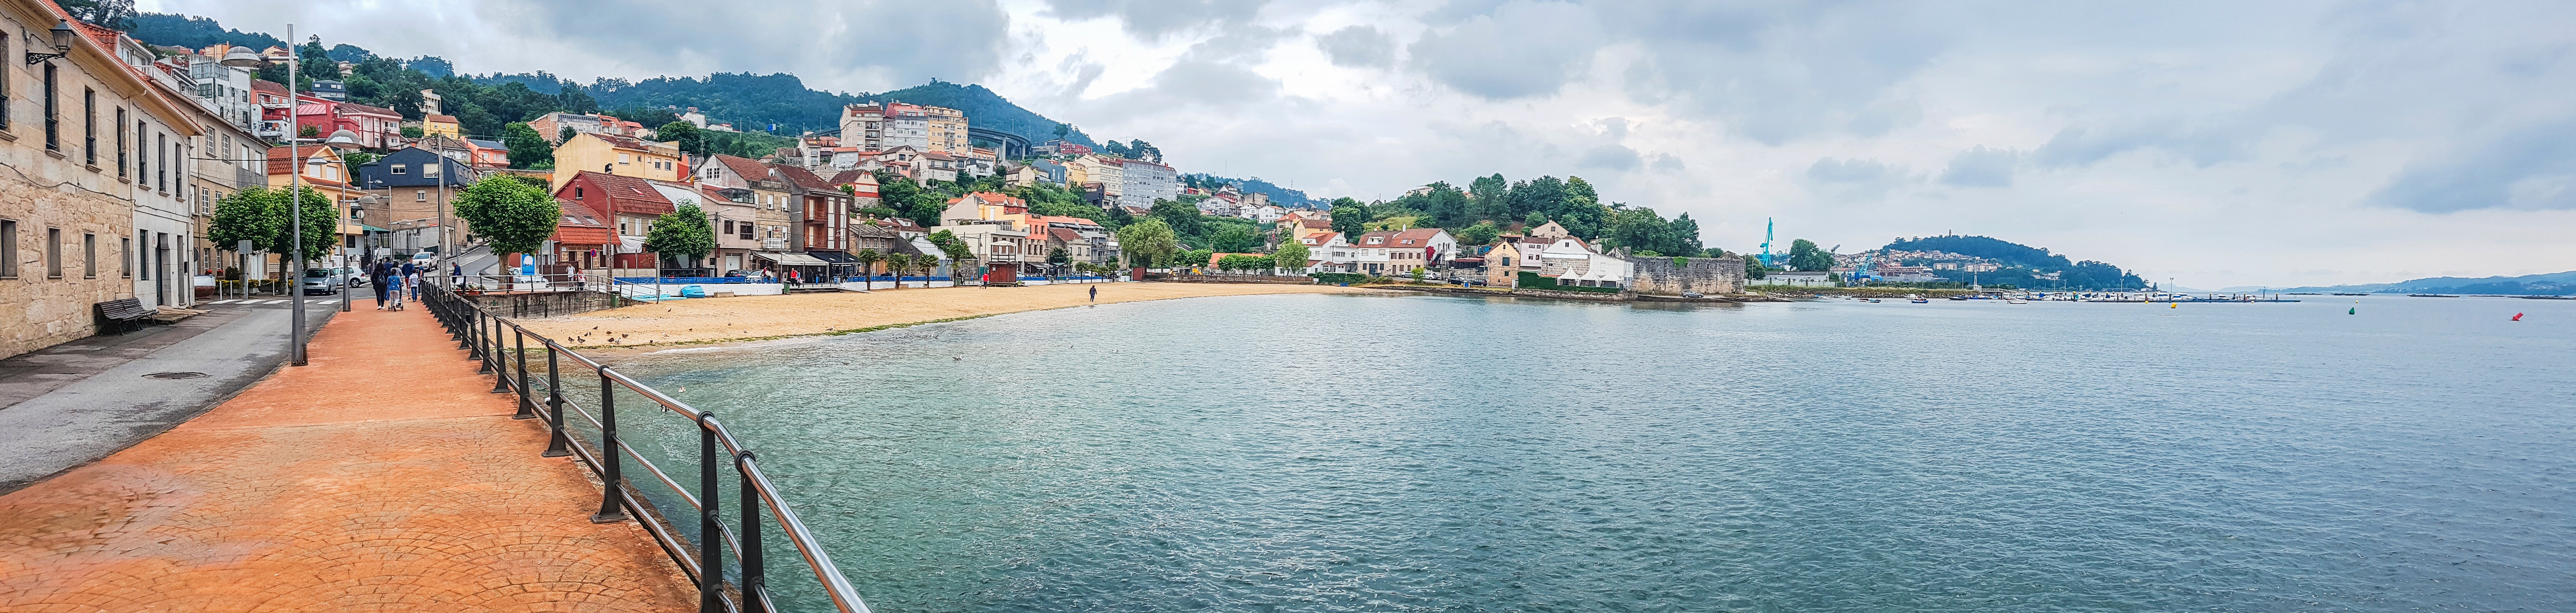 Vista panopramica del paseo marítimo del pueblo de Chapela en la ciudad de Redondela, estuario de Vigo. Fuente: Shutterstock